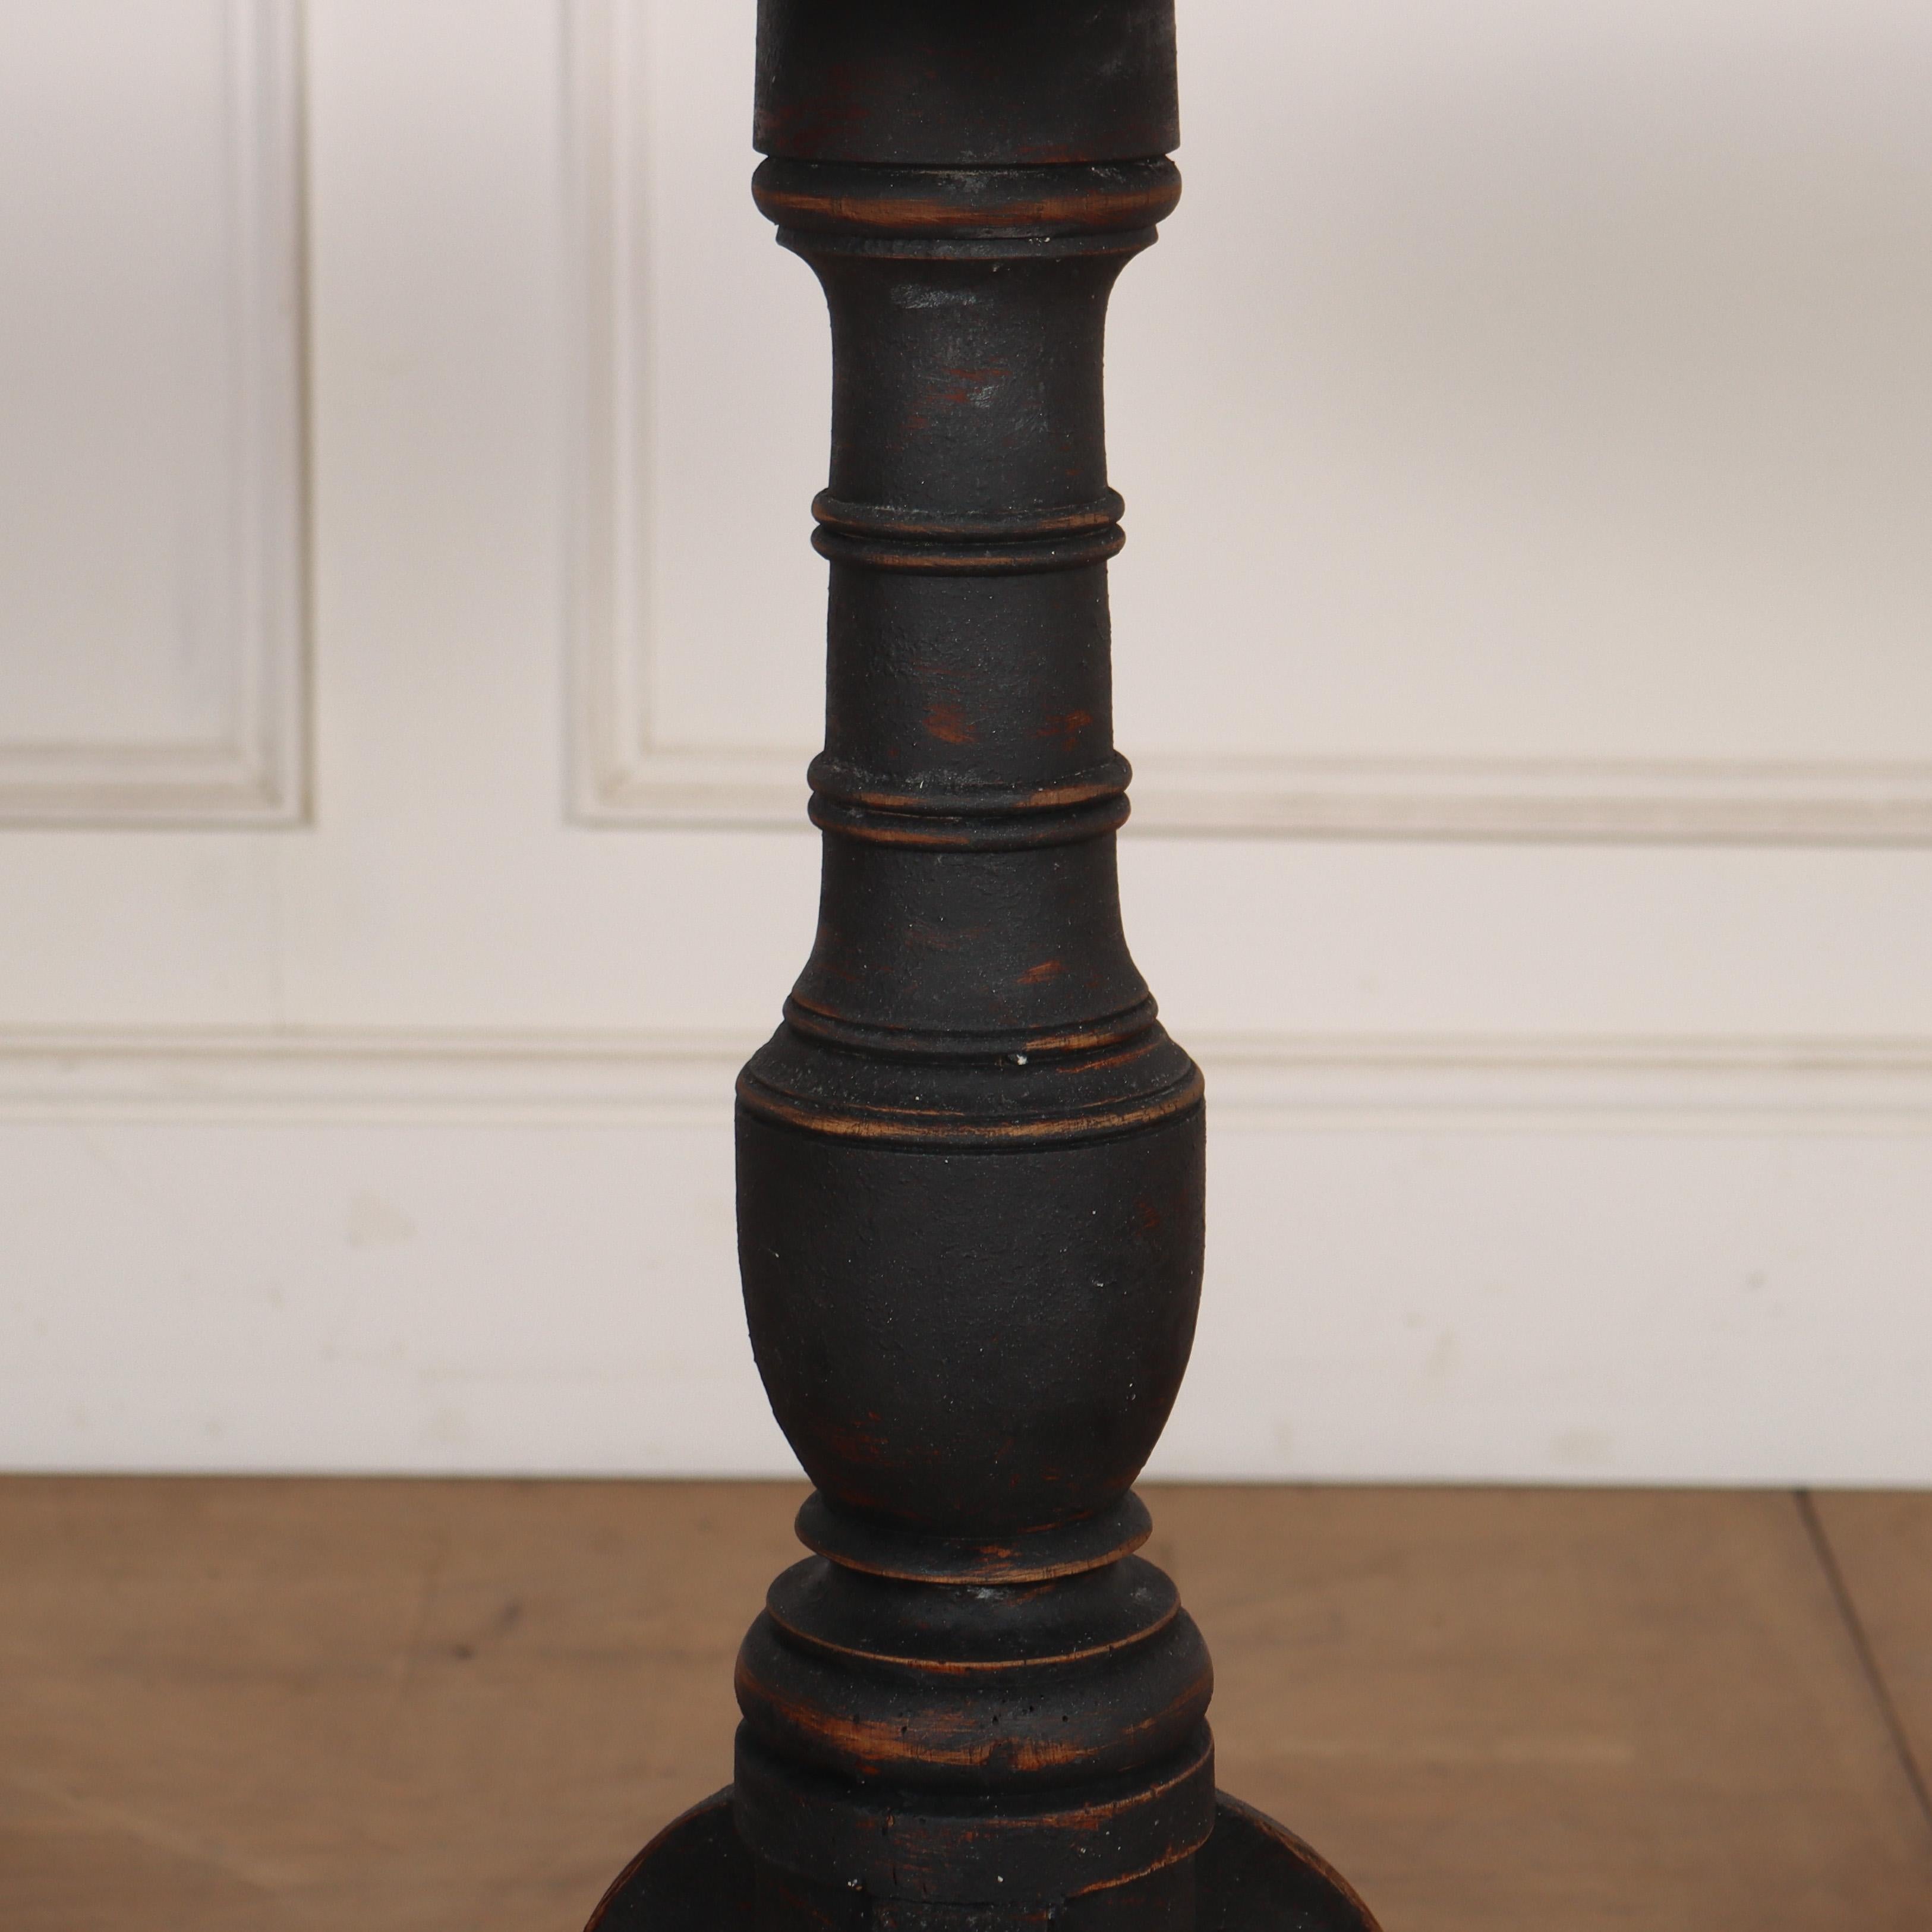 Frühe 19. Jh. Schwedische Lampe / Beistelltisch aus bemalter Eiche mit einer Platte aus Kunstmarmor. 1830.

Aktenzeichen: 8035

Abmessungen
28,5 Zoll (72 cm) hoch
28,5 Zoll (72 cm) Durchmesser